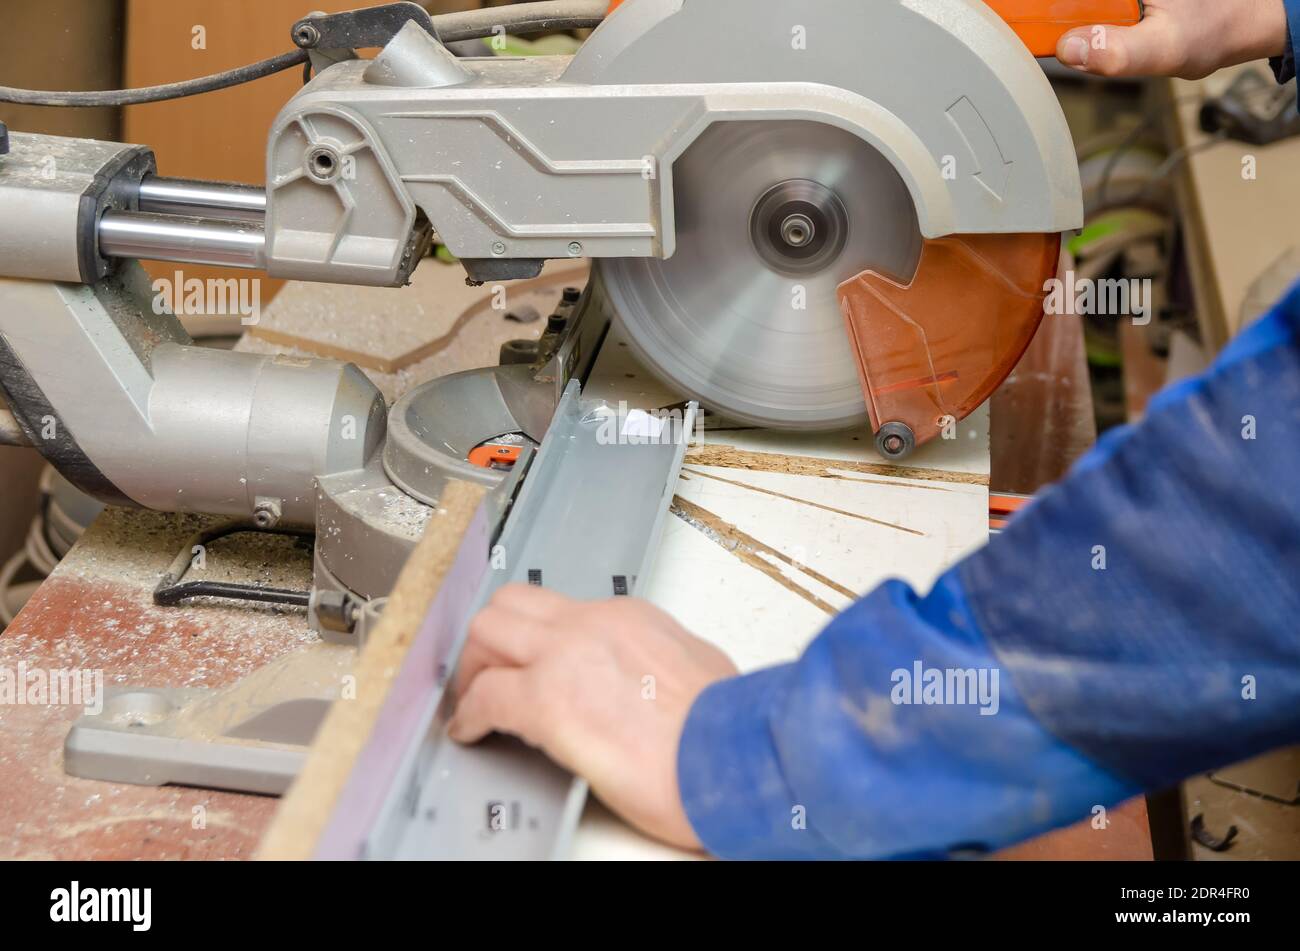 Arbeiter schneidet einen Teil des Metallrahmens mit einer Kreissäge zum  Schneiden von Aluminium ab. Sägen von Metall. Schleifmaschine  Stockfotografie - Alamy